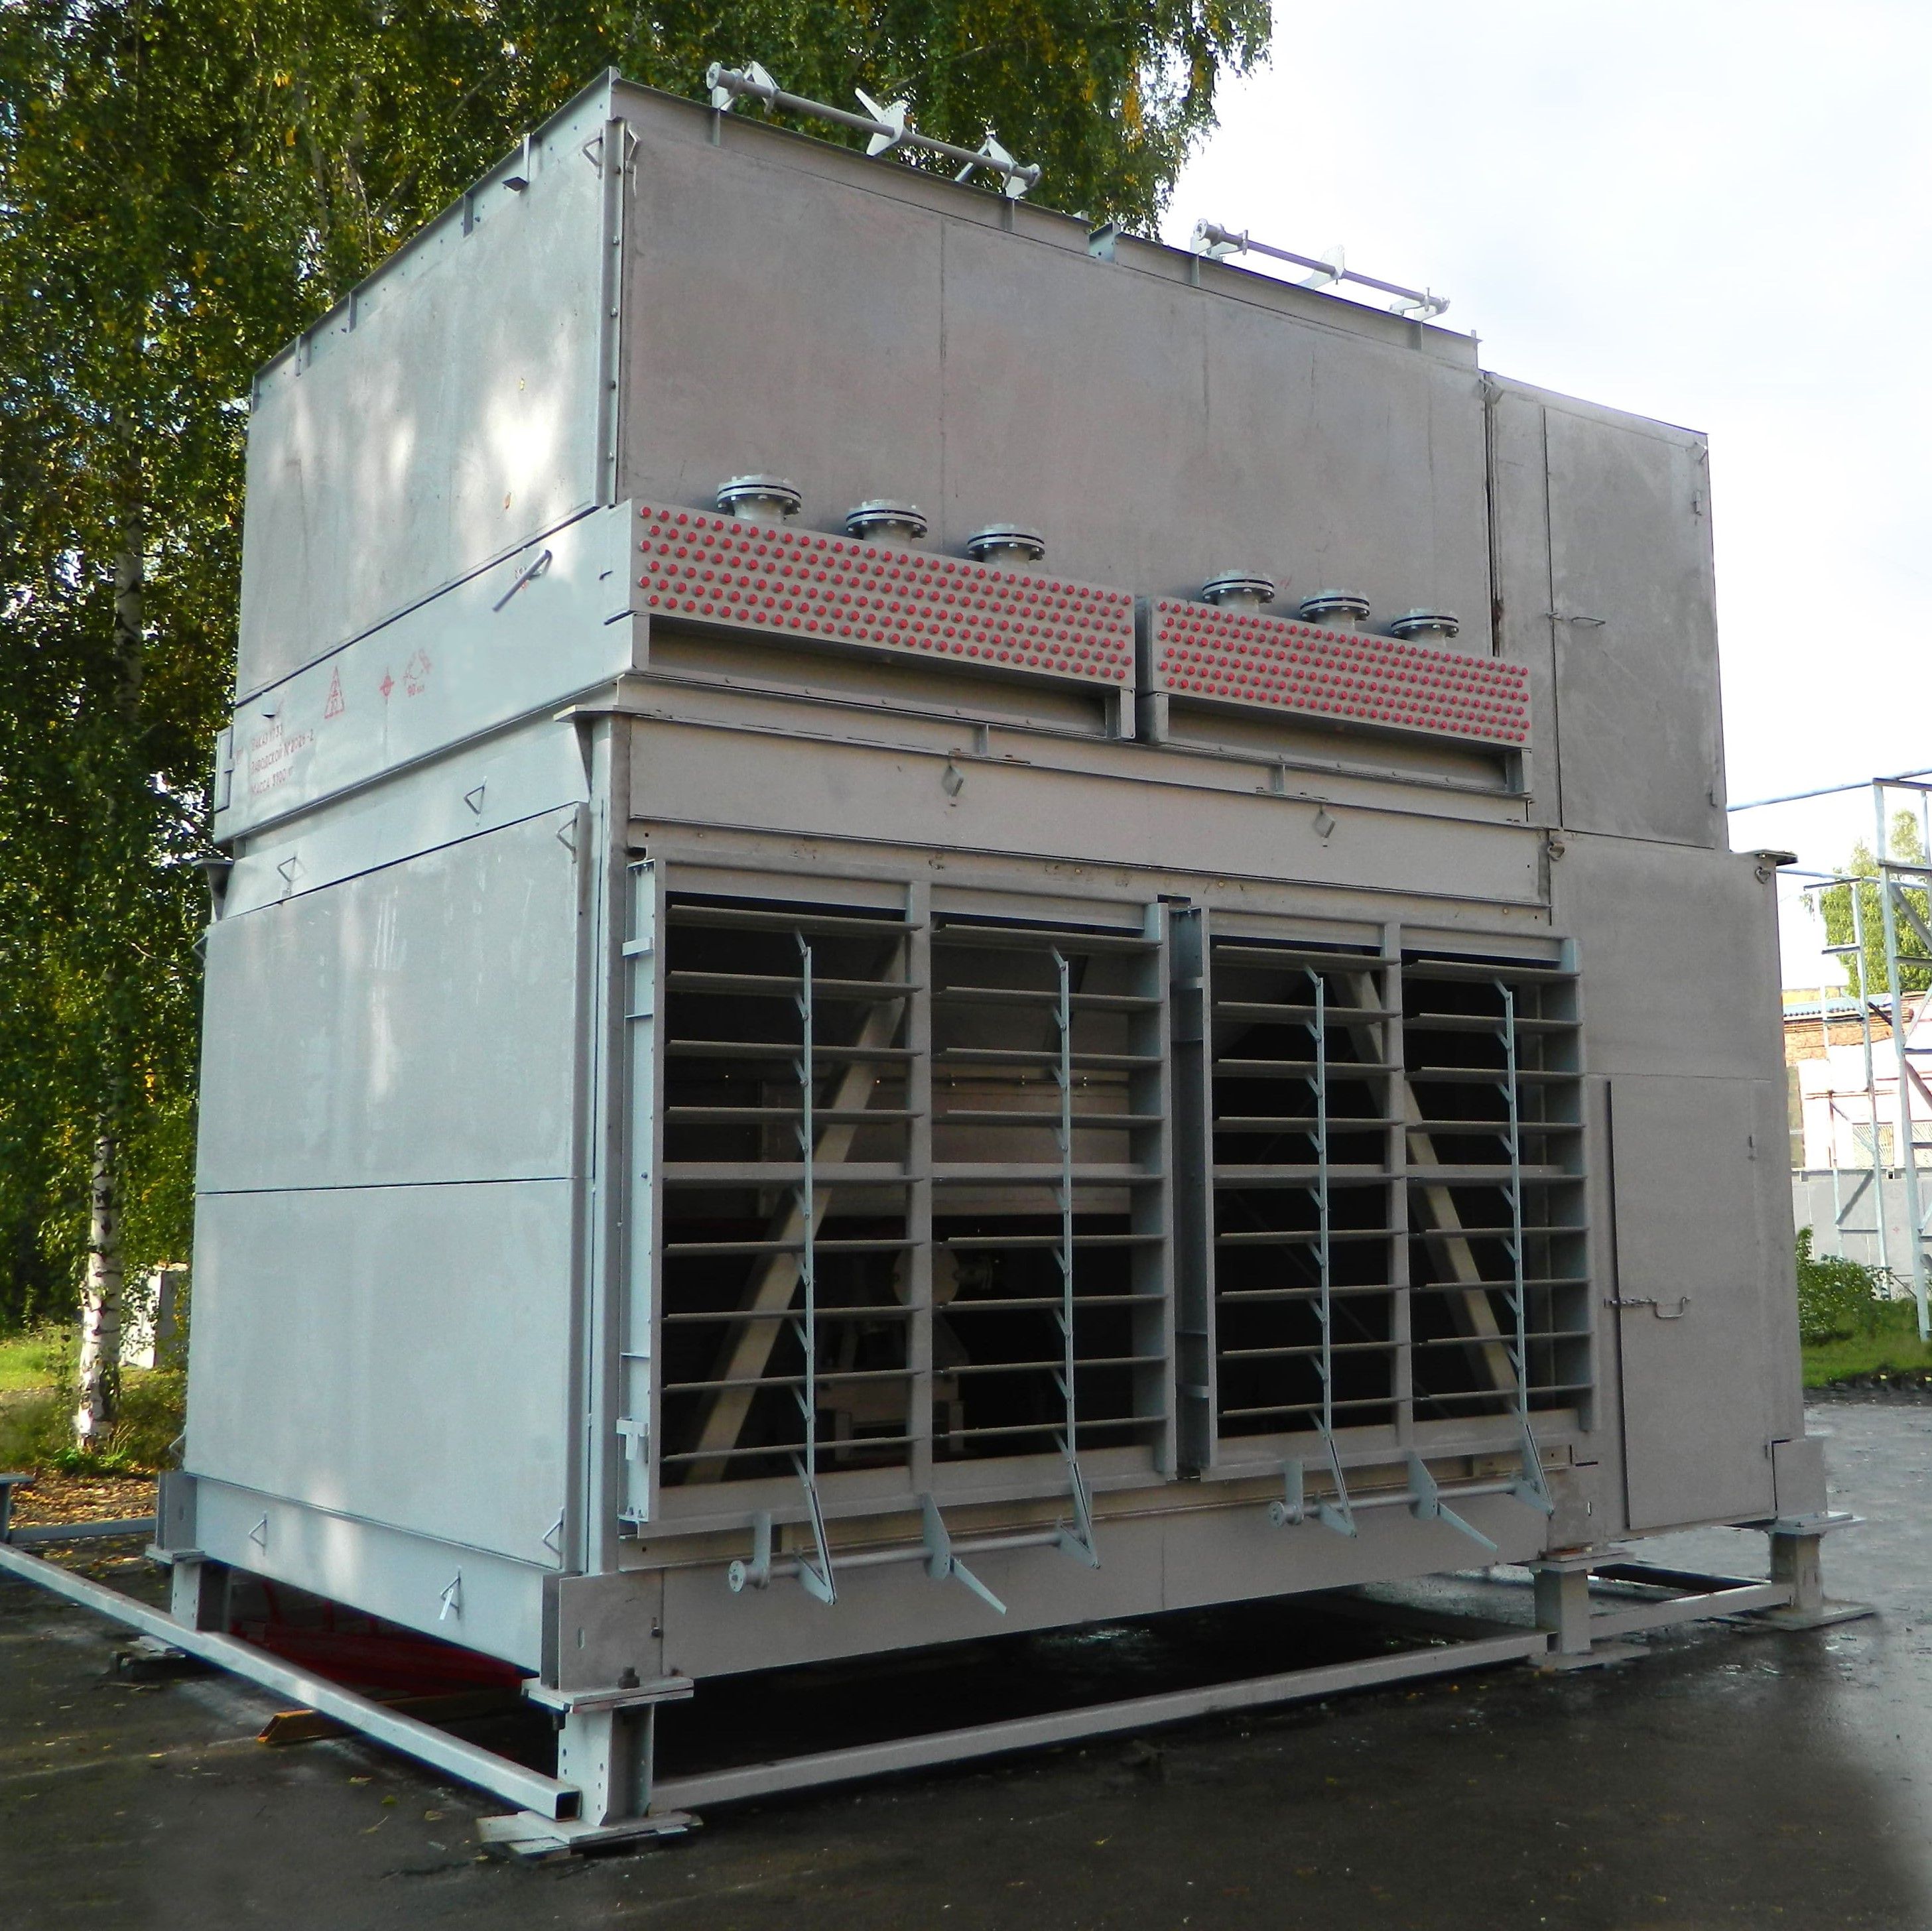 Аппарат воздушного охлаждения блочно-модульного типа с системой рециркуляции нагретого воздуха